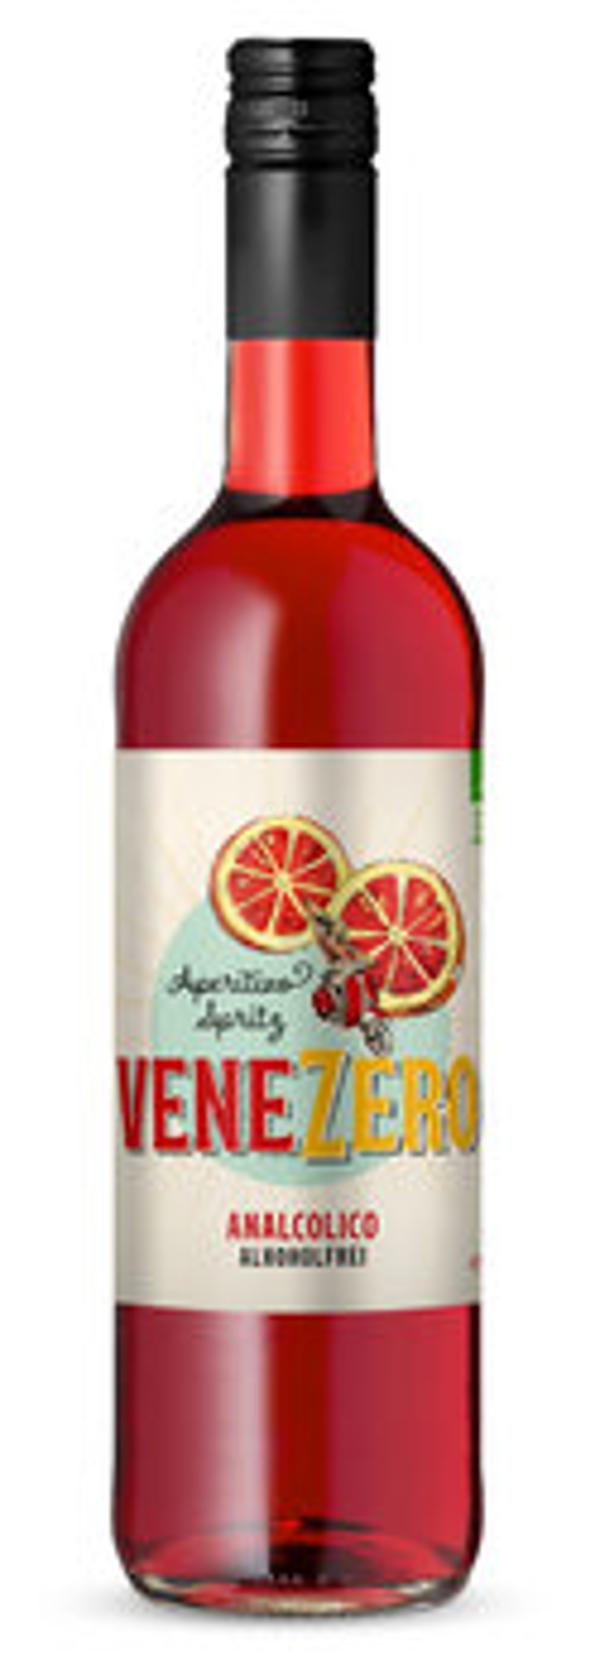 Produktfoto zu Aperitivo Spritz Venezero alkoholfrei 0,75l